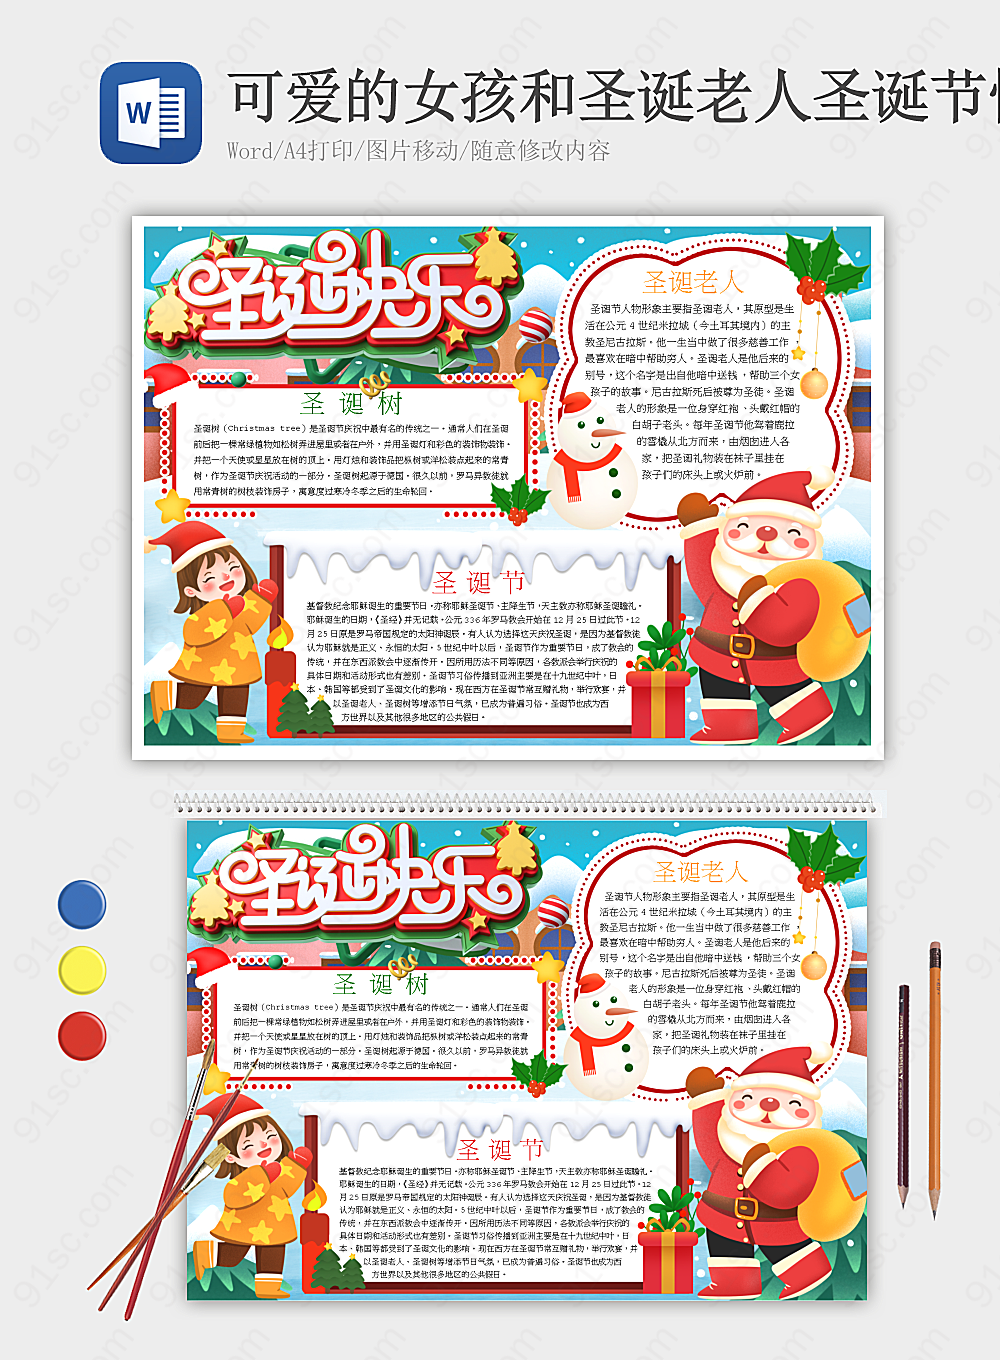 可爱女孩与圣诞老人庆祝圣诞节的创意手抄报设计节日手抄报小报海报Word模板下载